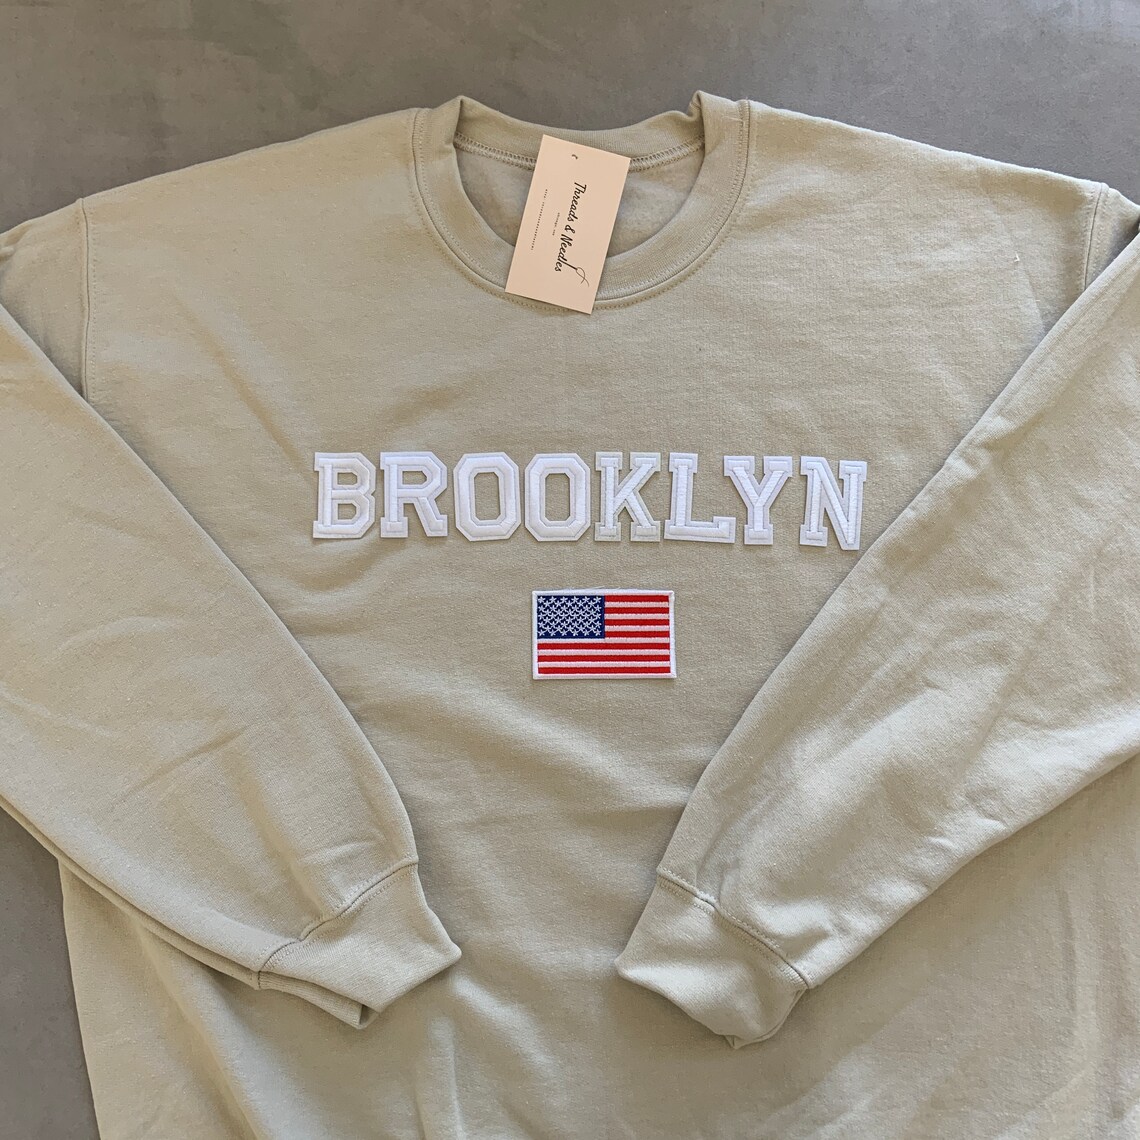 Brooklyn Sweatshirt Brooklyn Crewneck New York Sweatshirt - Etsy